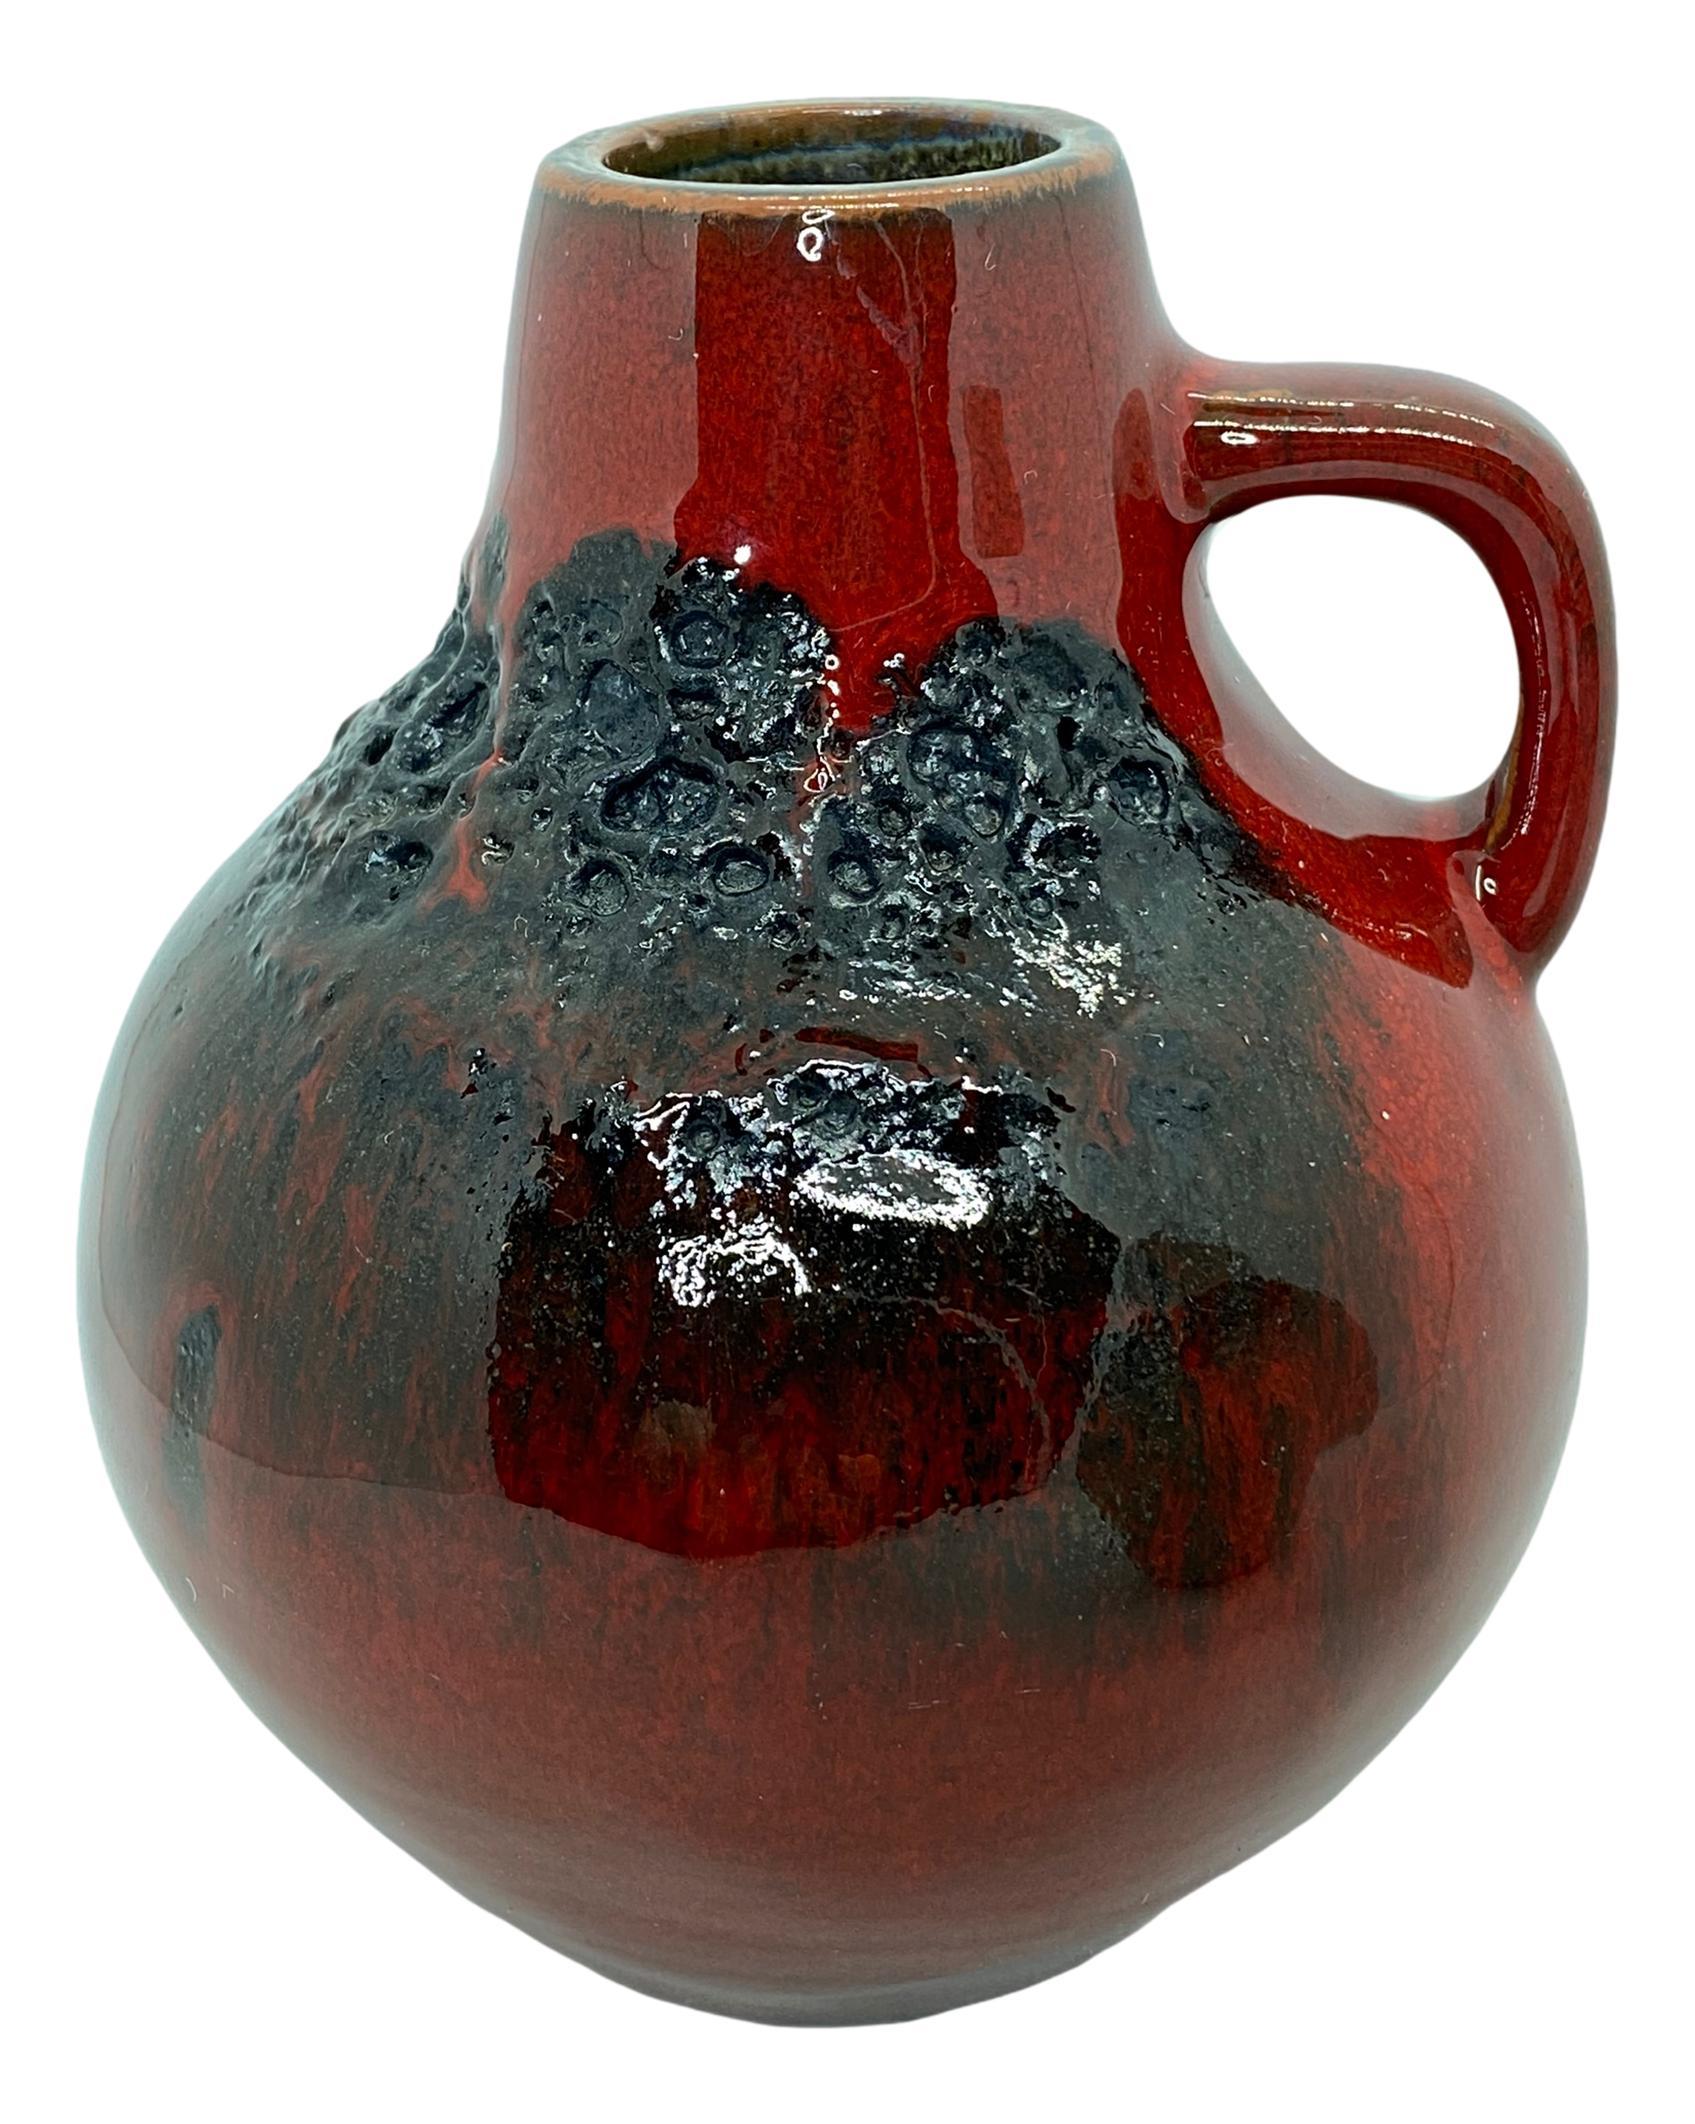 Un ensemble étonnant de deux vases en poterie d'art du milieu du siècle dernier, fabriqués en Allemagne, vers les années 1970, par Kreutz Keramik. Vases en très bon état, sans éclats, ni fissures, ni piqûres de puces. Signé avec le numéro de modèle